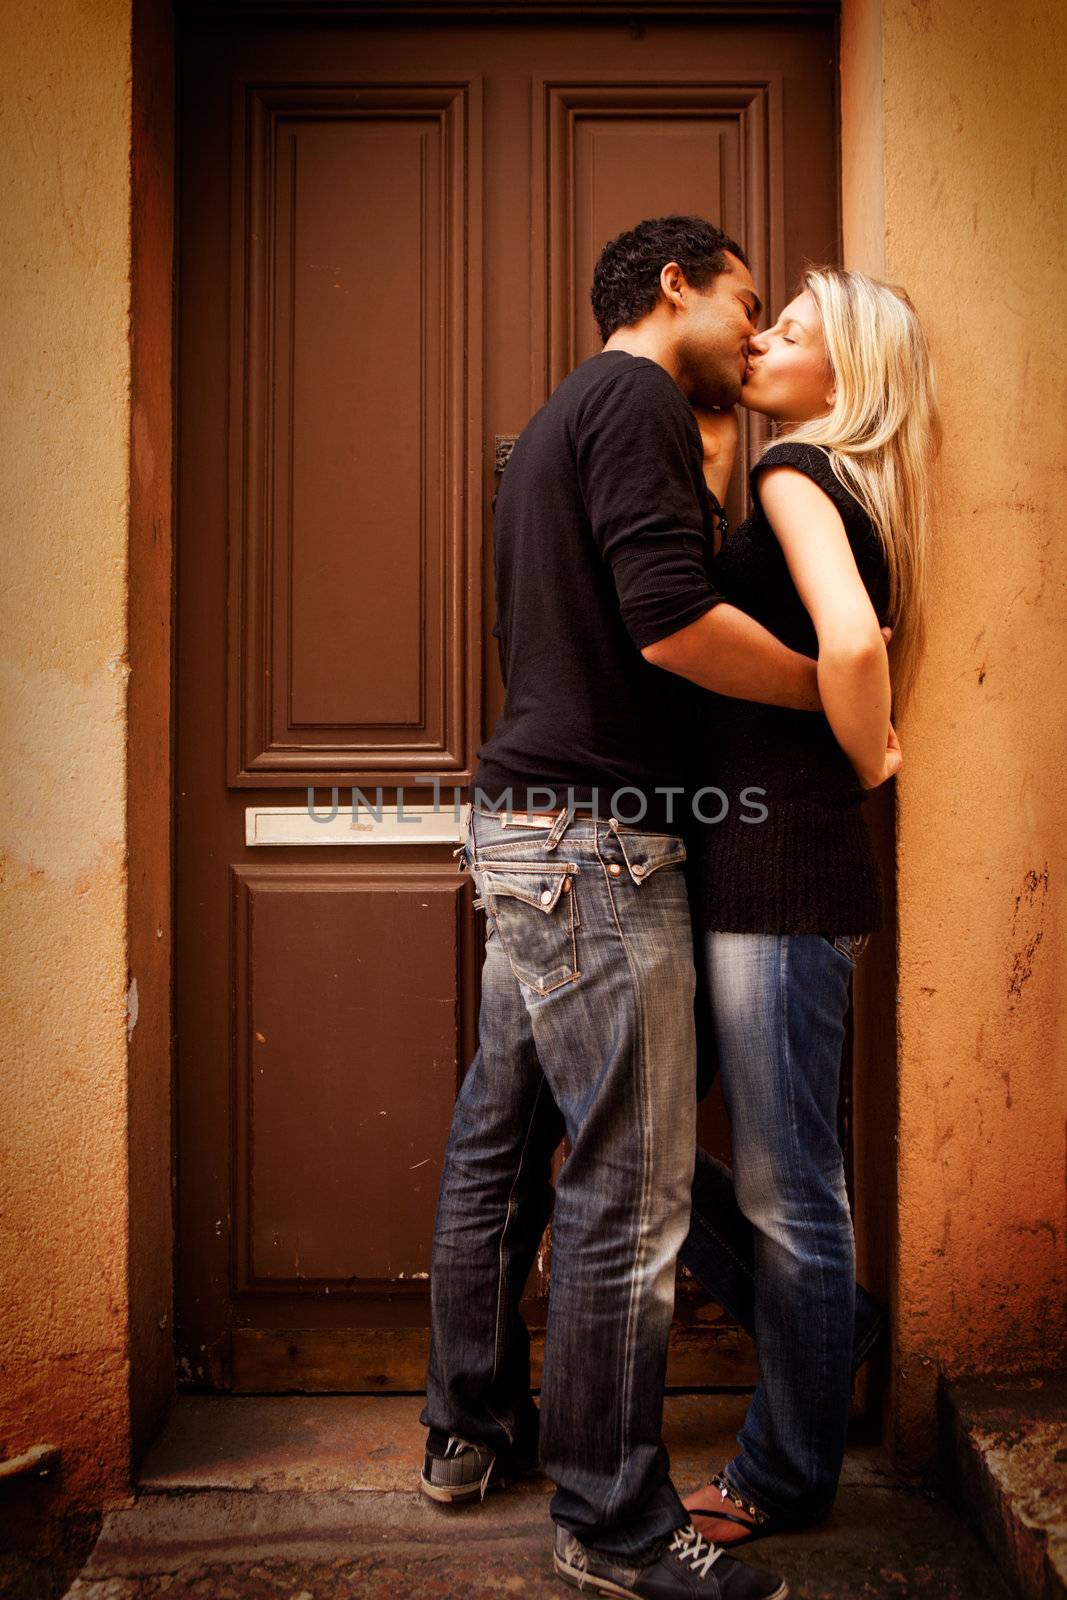 A couple kissing in an urban European setting